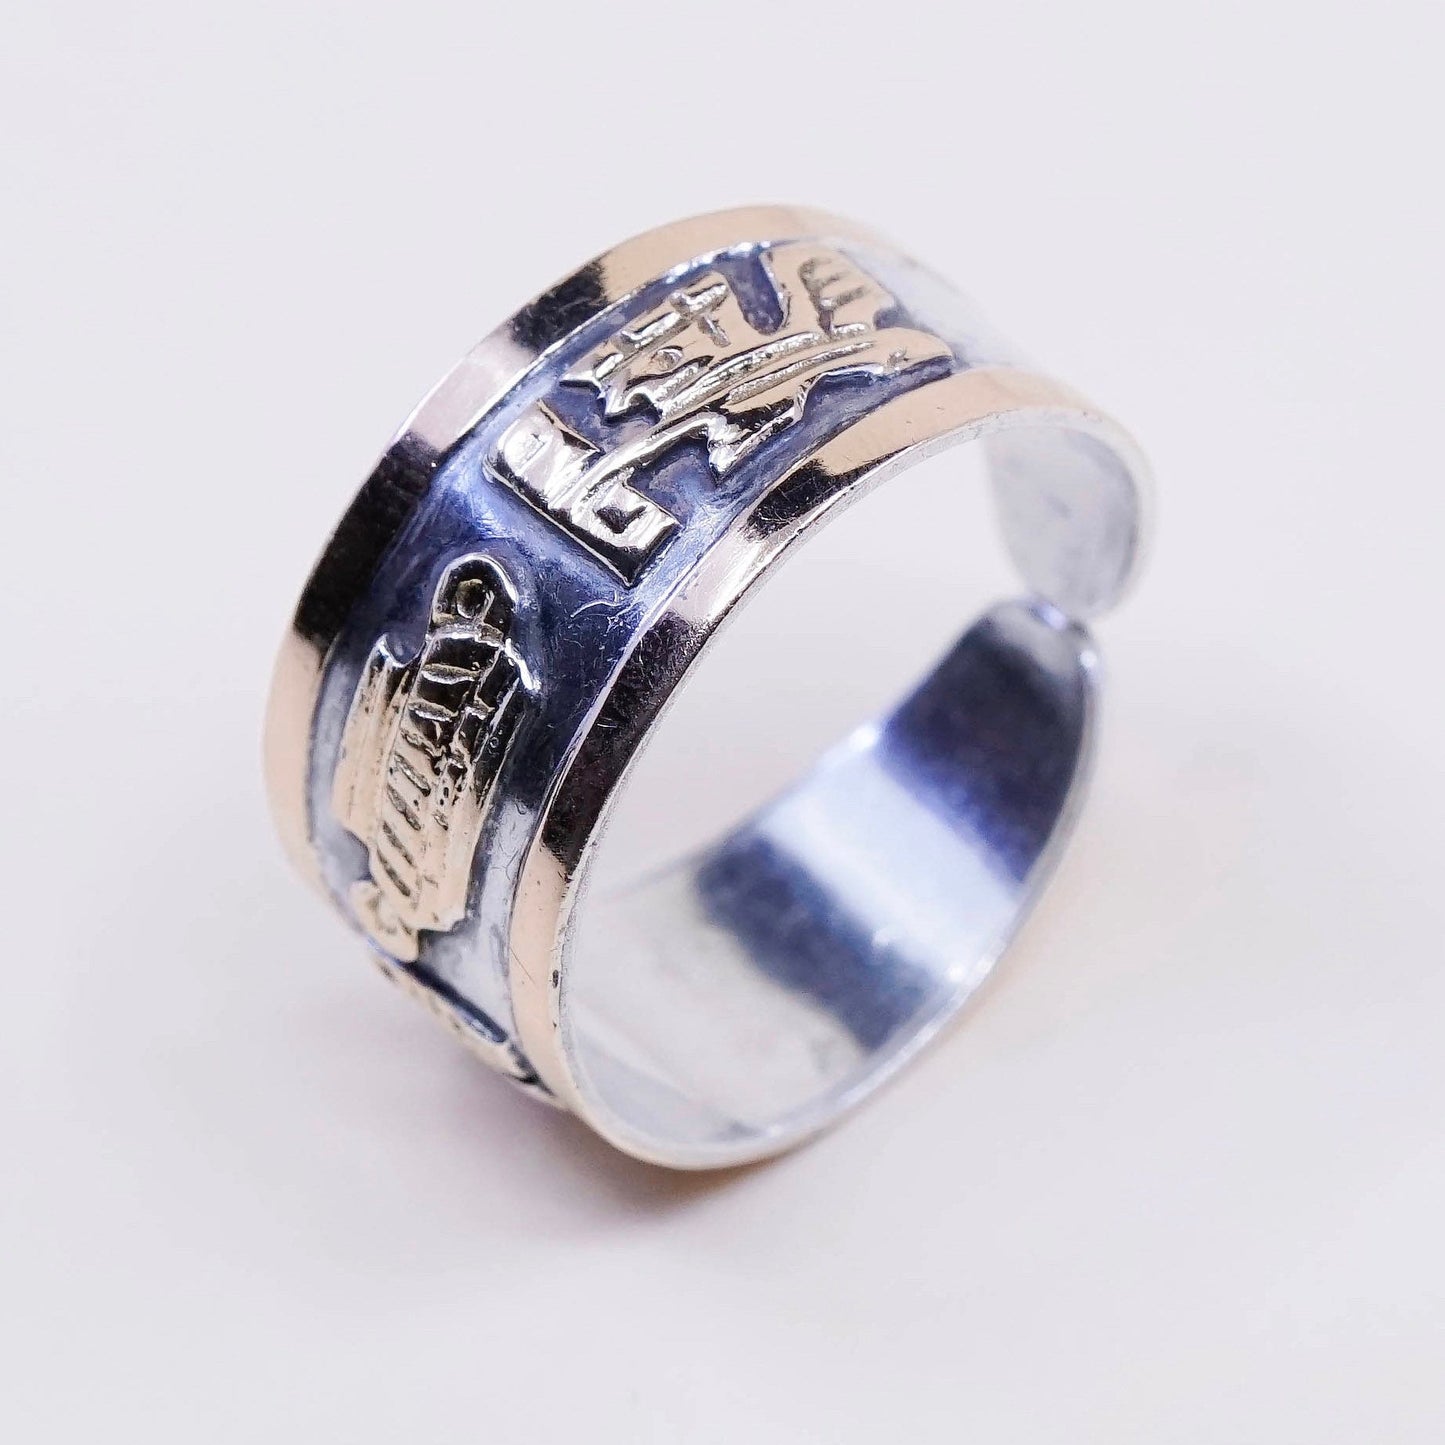 sz 7.75, vtg mexico 14K w/ sterling 925 silver handmade storyteller ring band